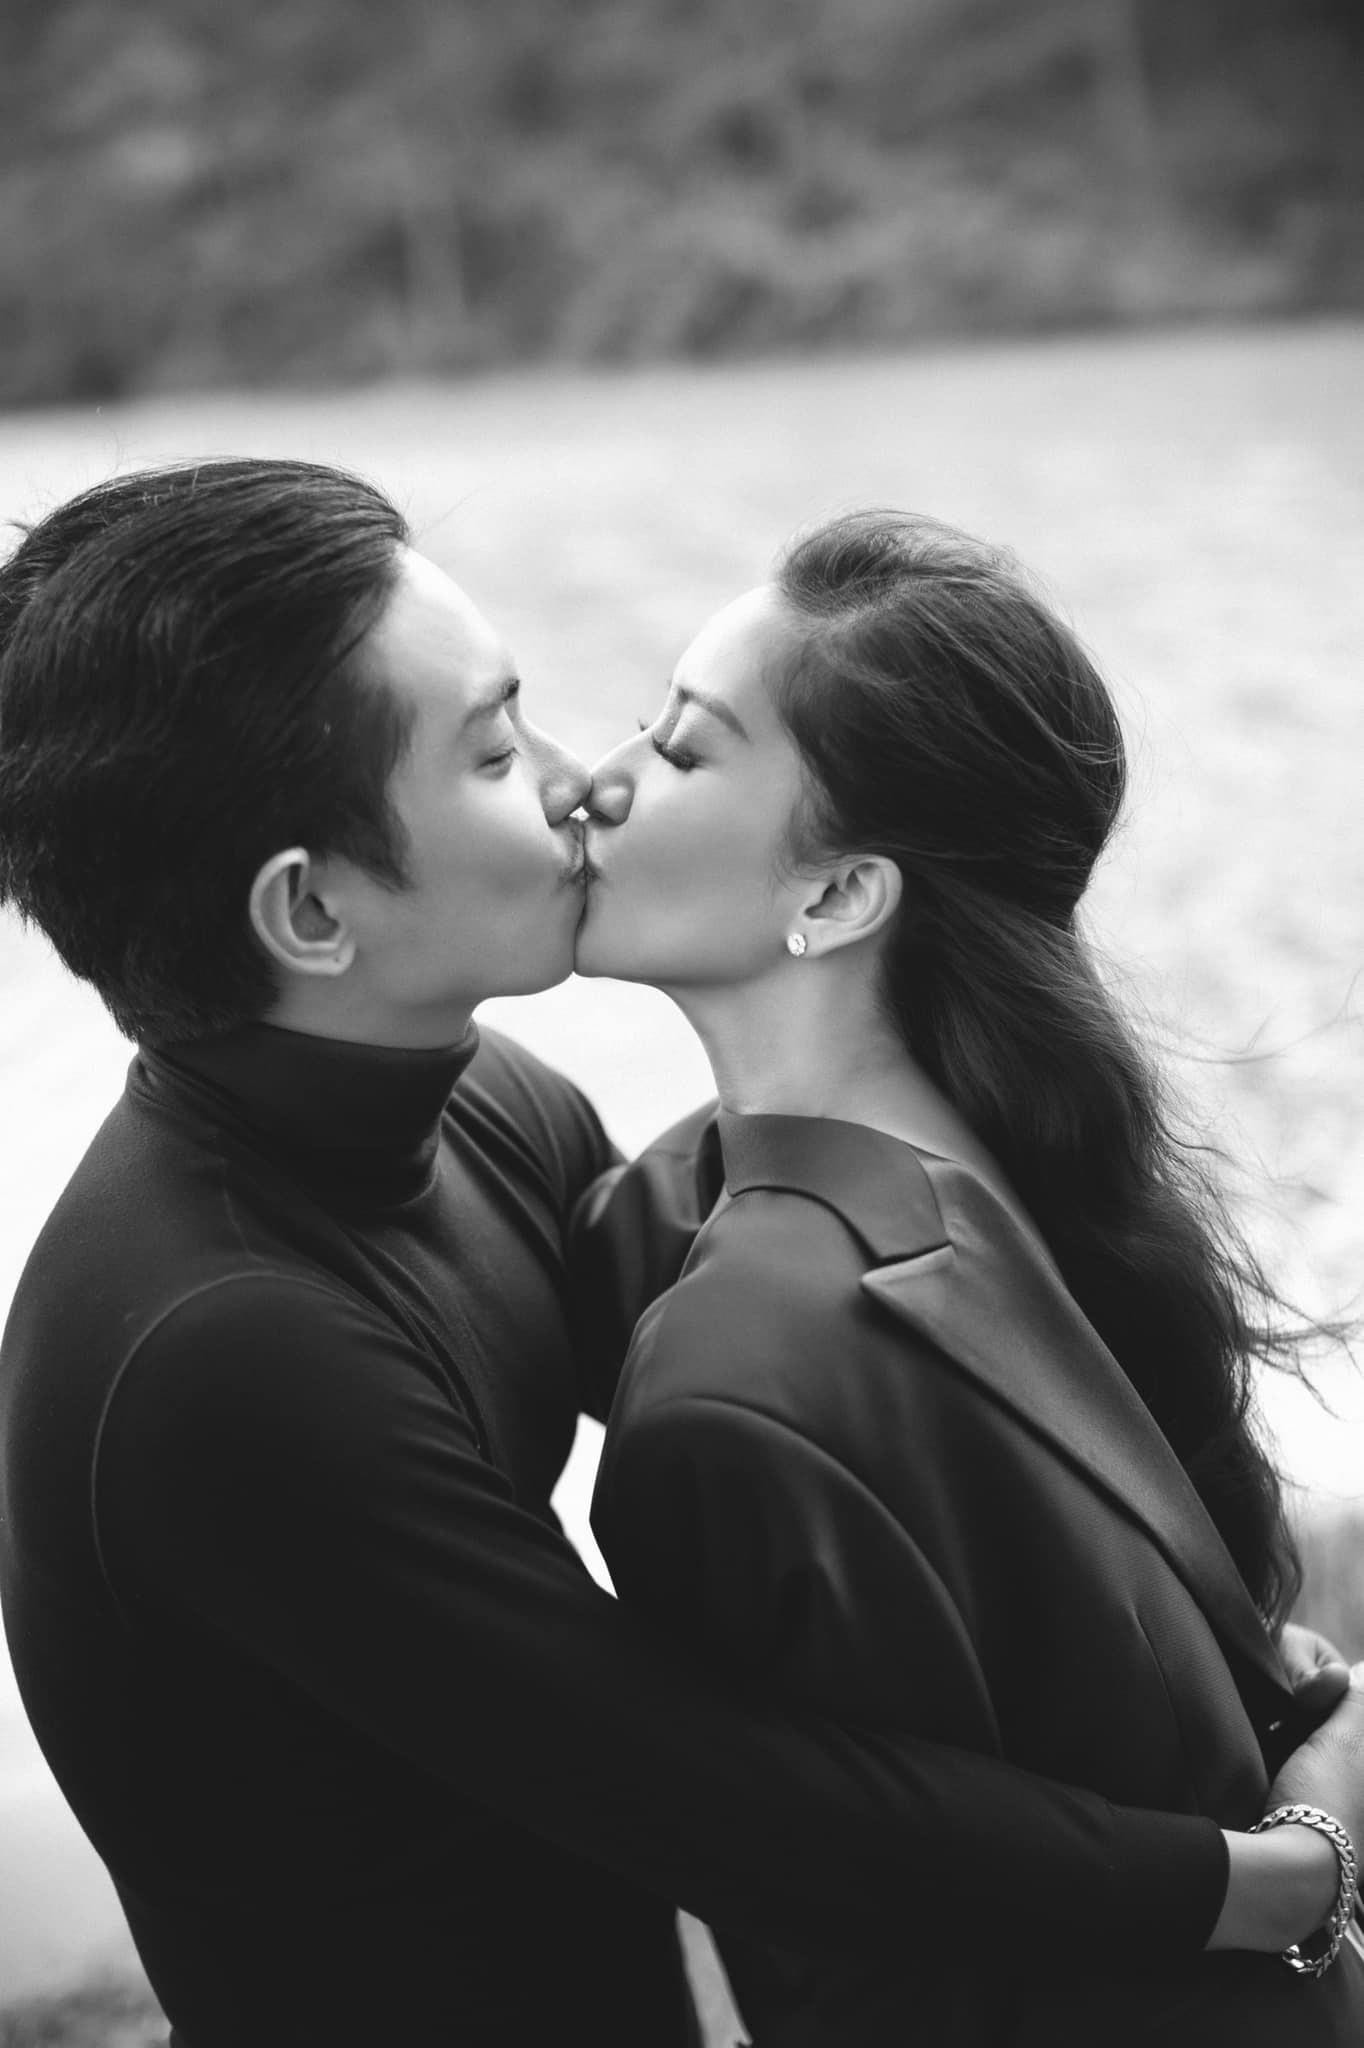 Nụ hôn của Khánh Thi, Phan Hiển khiến dân mạng phát sốt - 1